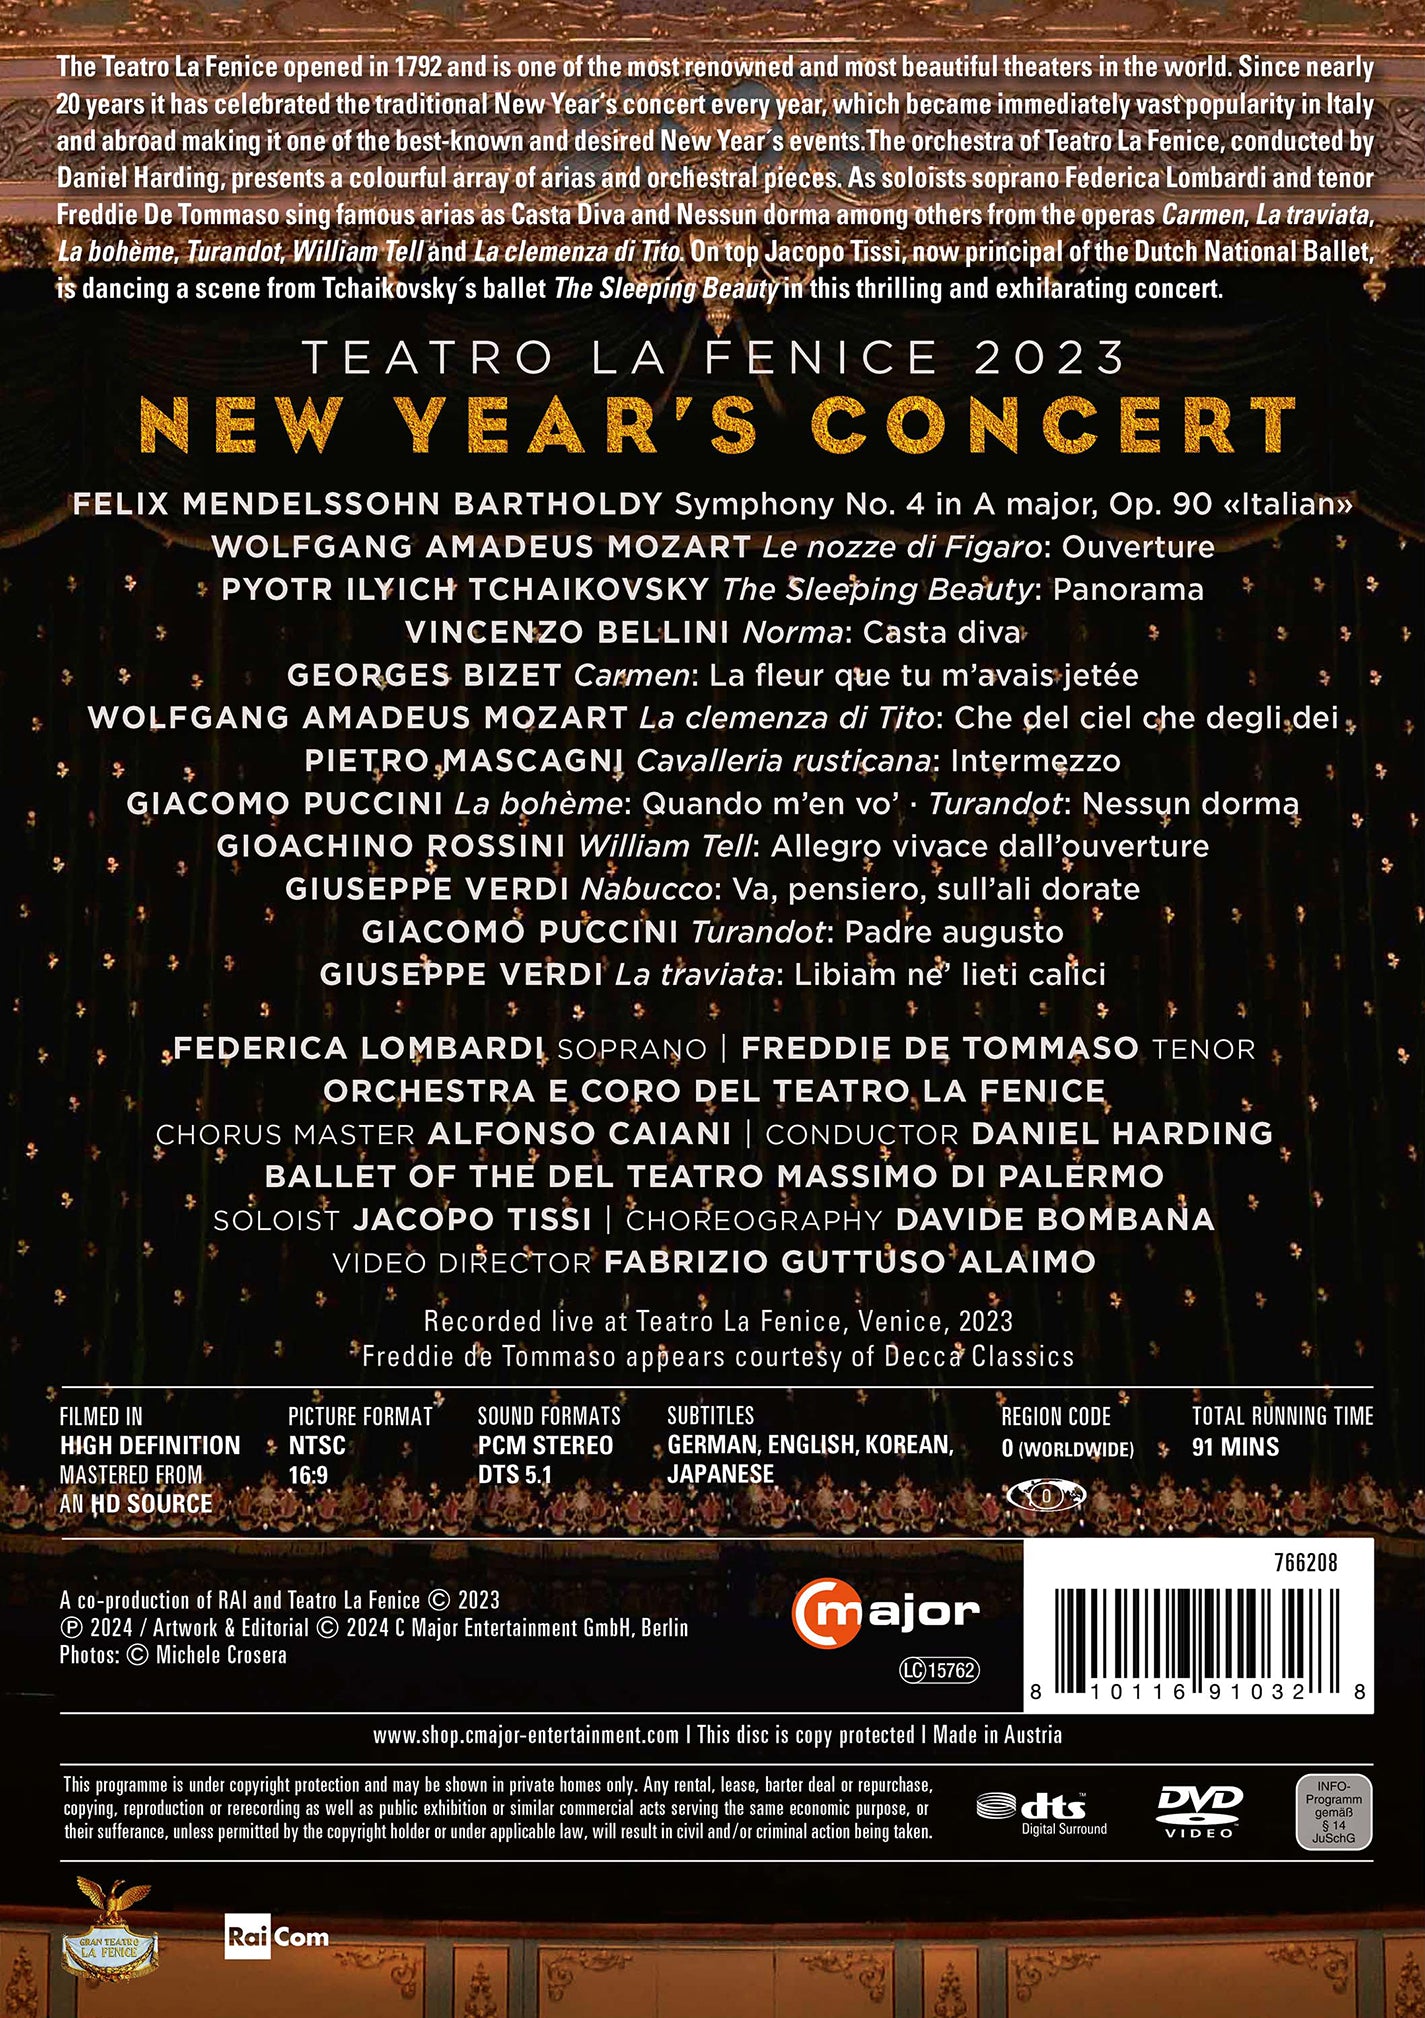 New Year's Concert: Teatro la Fenice 2023